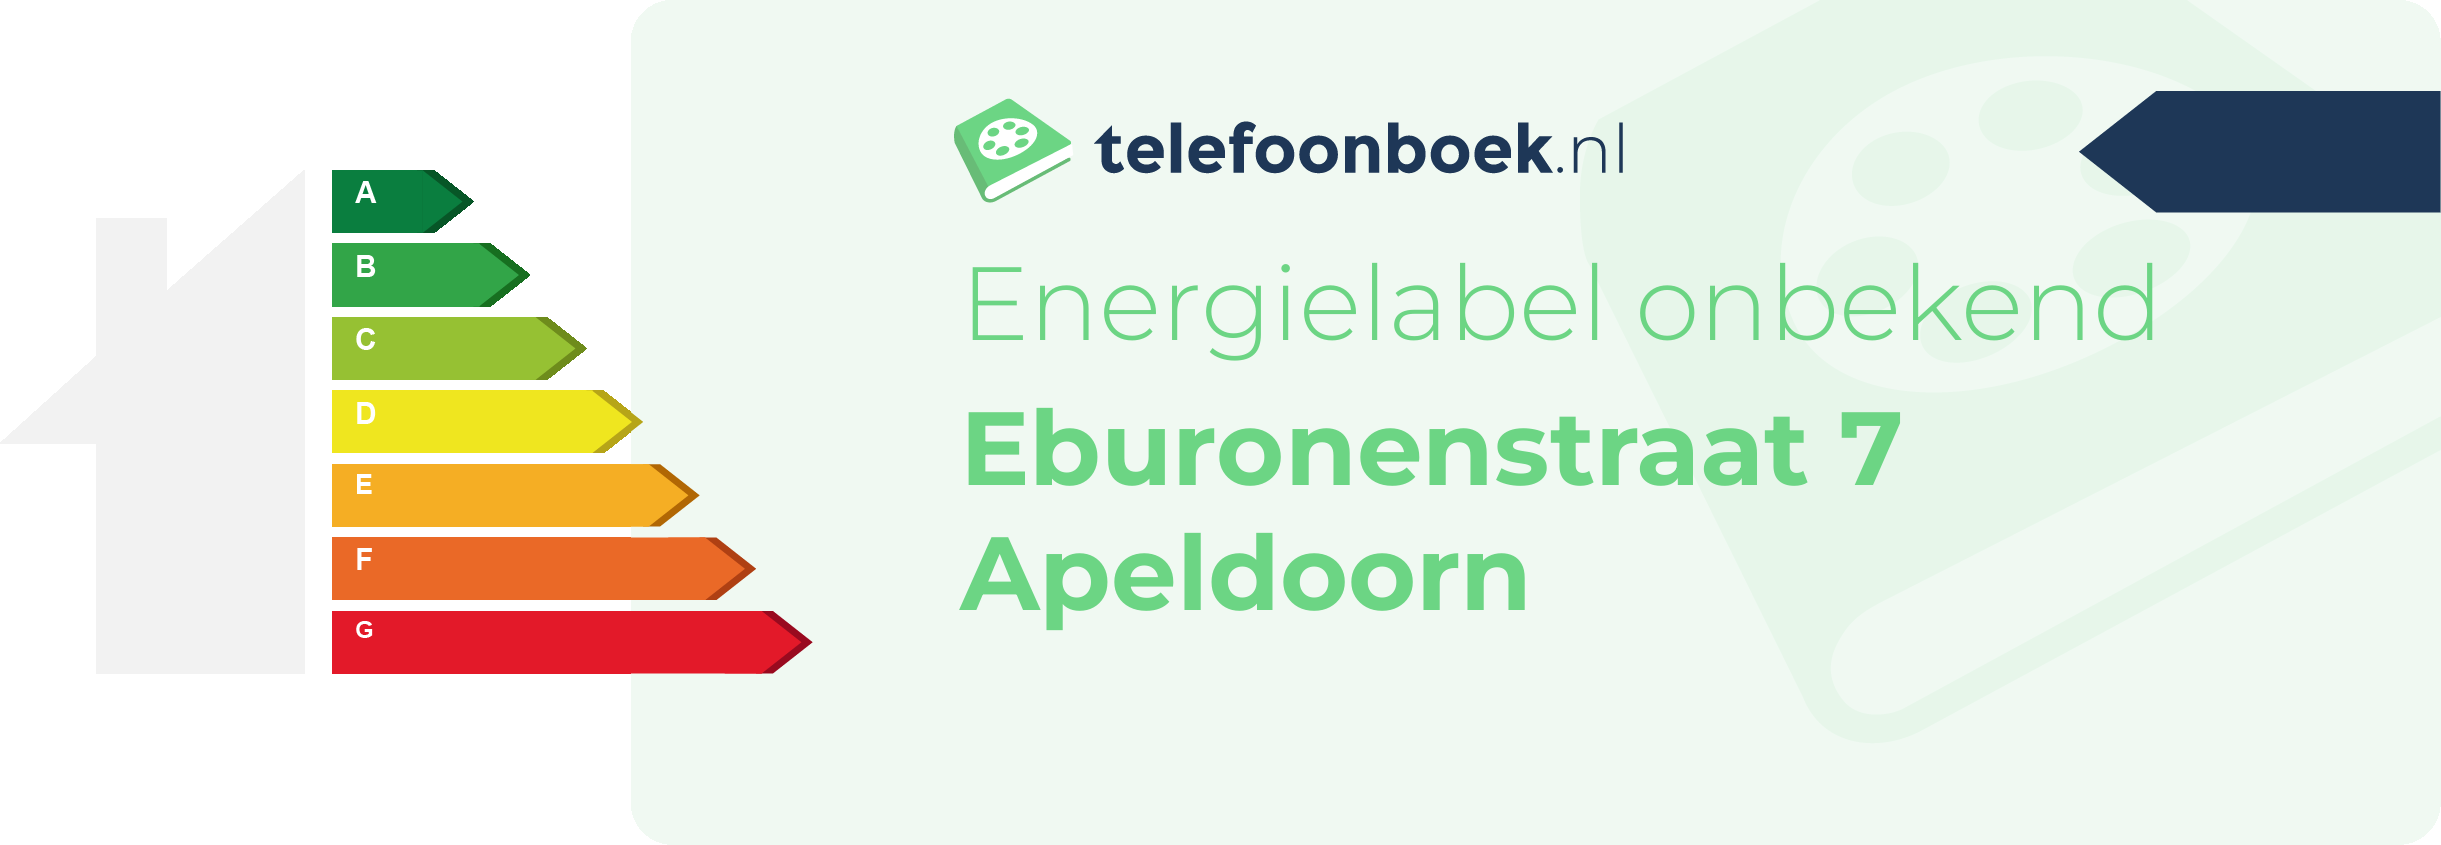 Energielabel Eburonenstraat 7 Apeldoorn